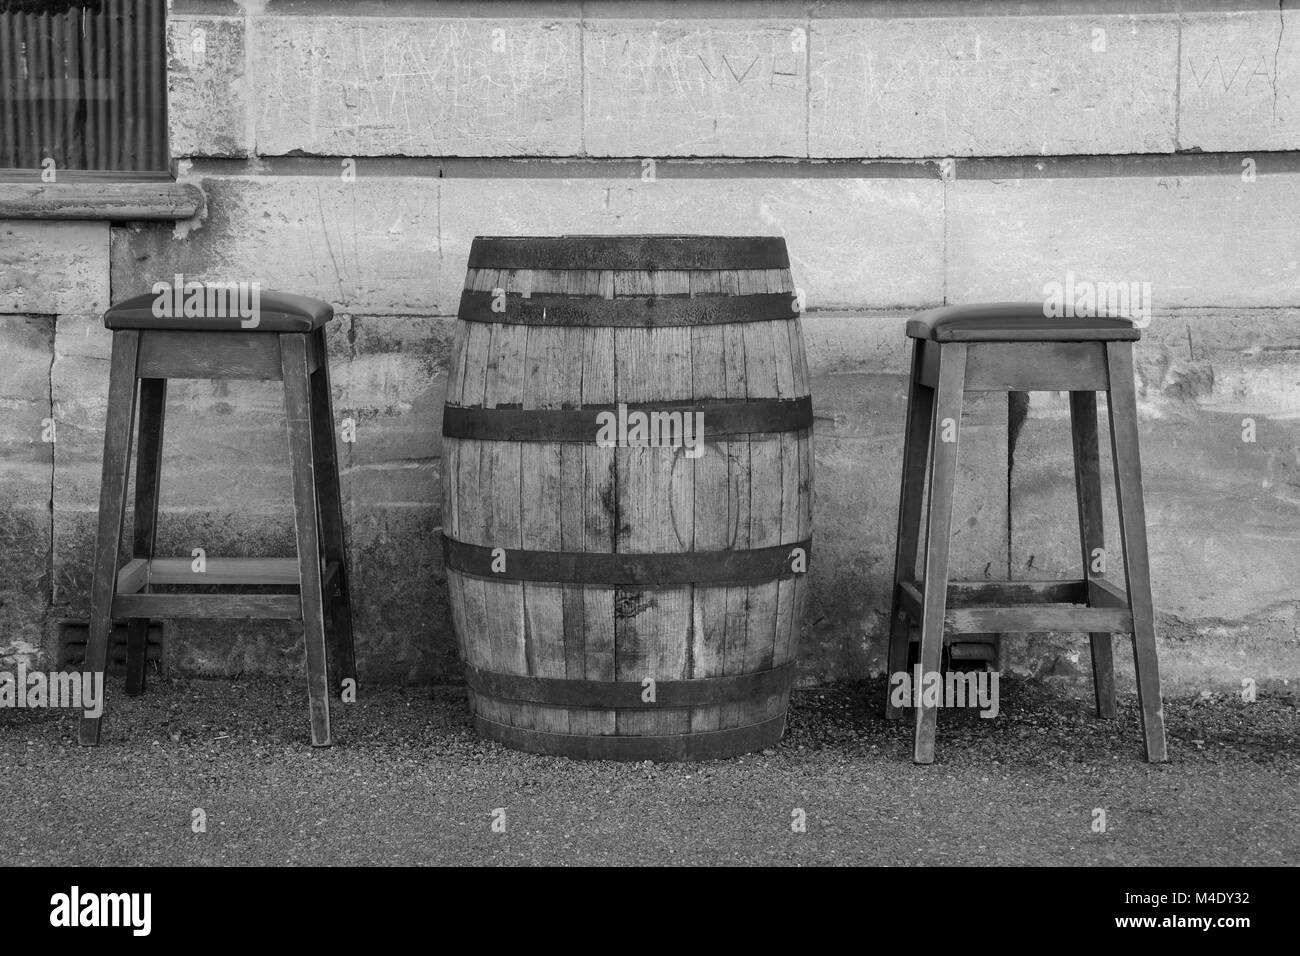 Two stools immagini e fotografie stock ad alta risoluzione - Alamy